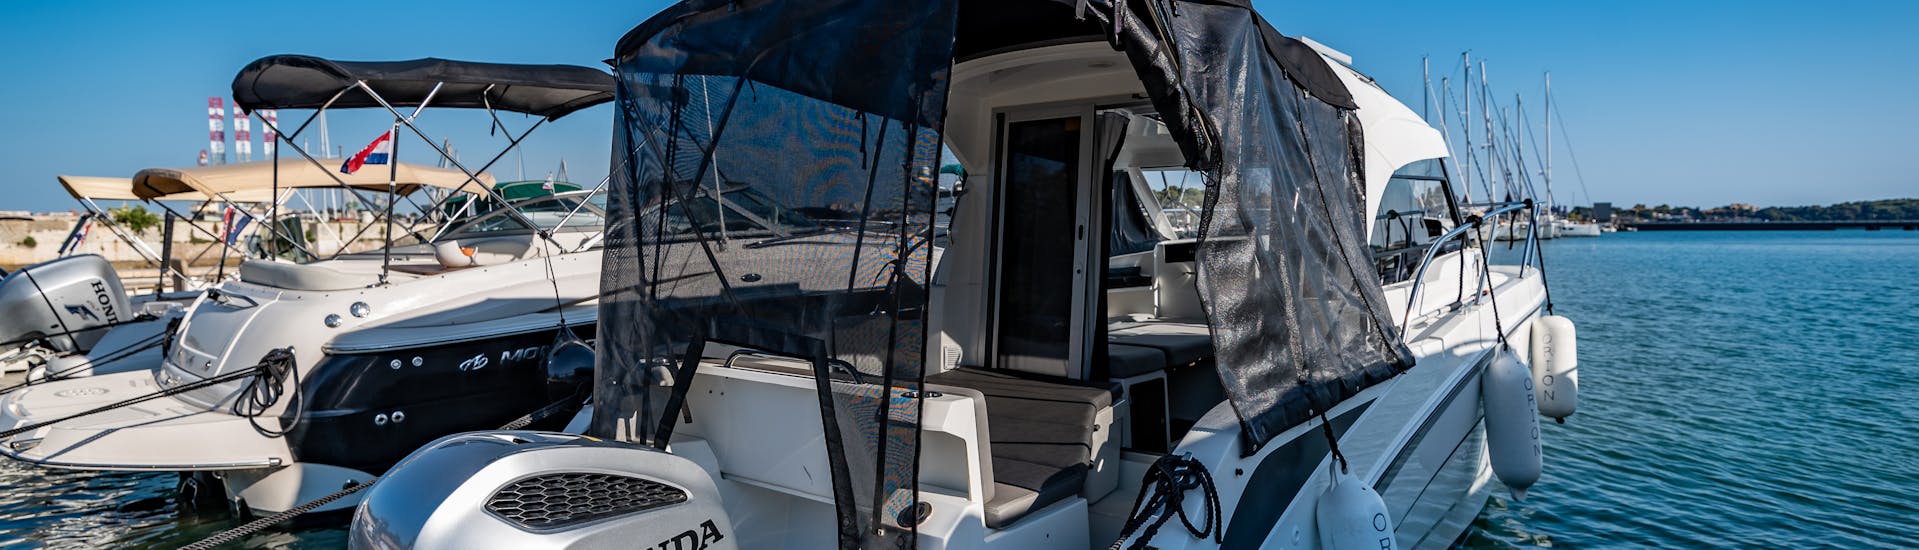 El Beneteau Antares 8 está listo para navegar durante el Alquiler de barcos en Pula (hasta 9 personas) con BELLEN Boat Rental.